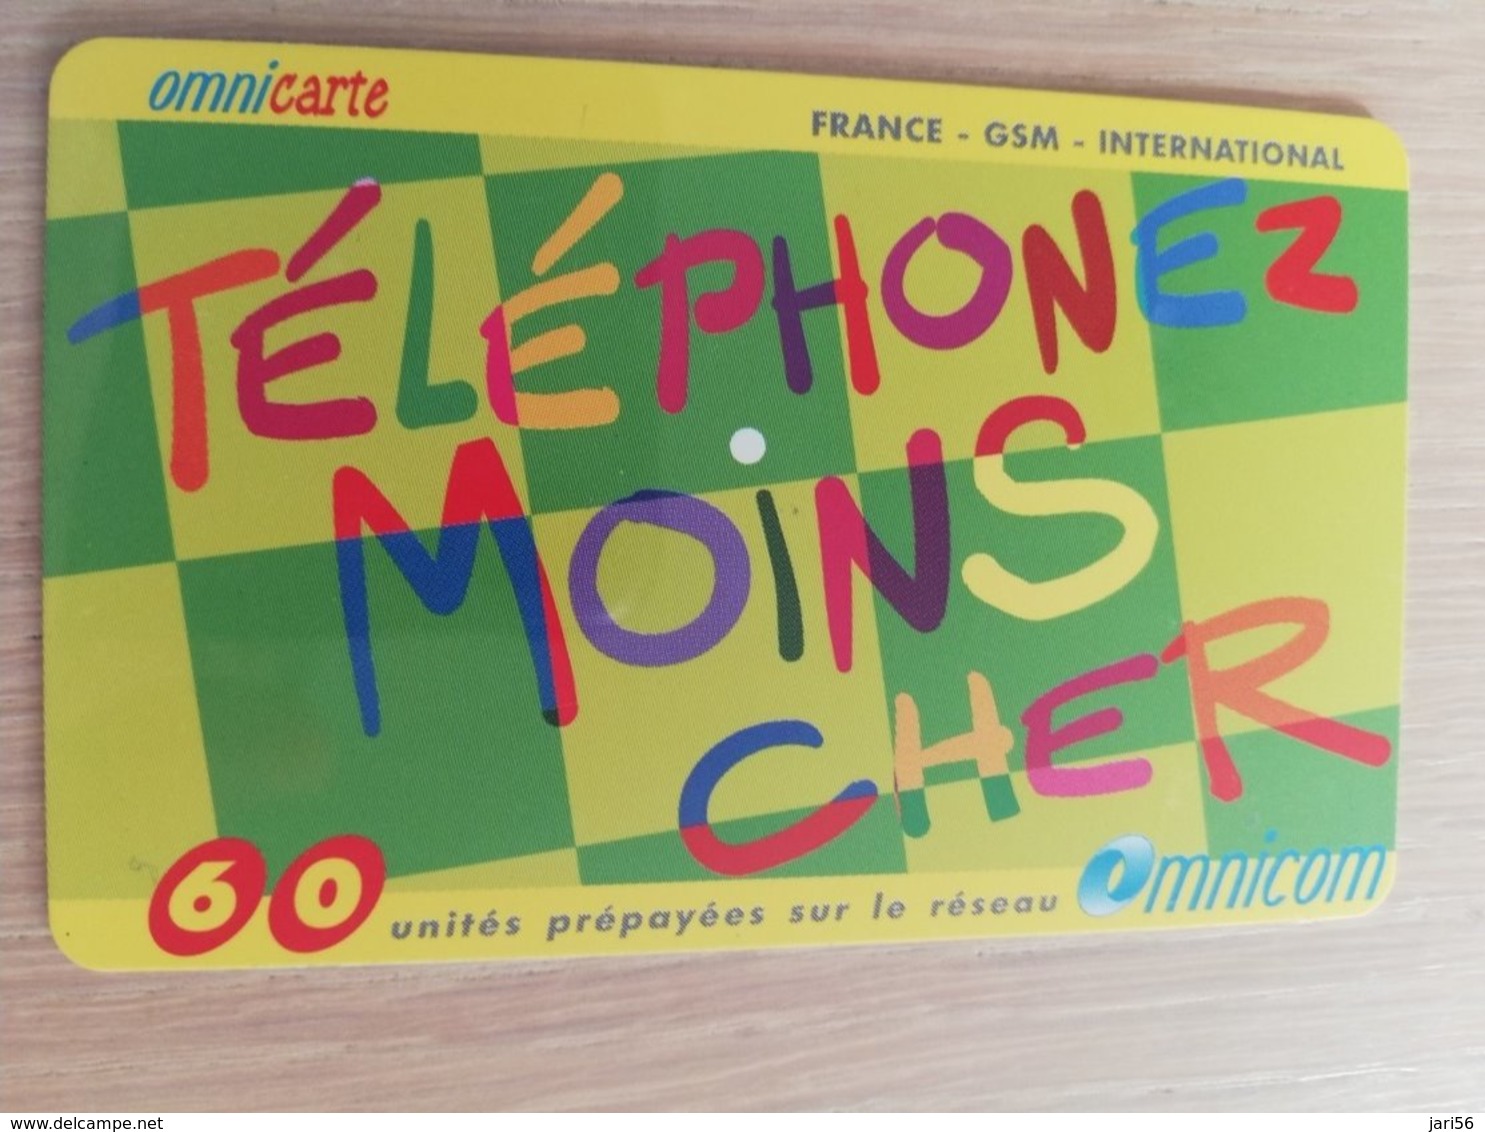 FRANCE/FRANKRIJK  OMNICARTE TELEPHONE MOINS CHER 60 UNITS PREPAID  USED    ** 1510** - Mobicartes: Móviles/SIM)